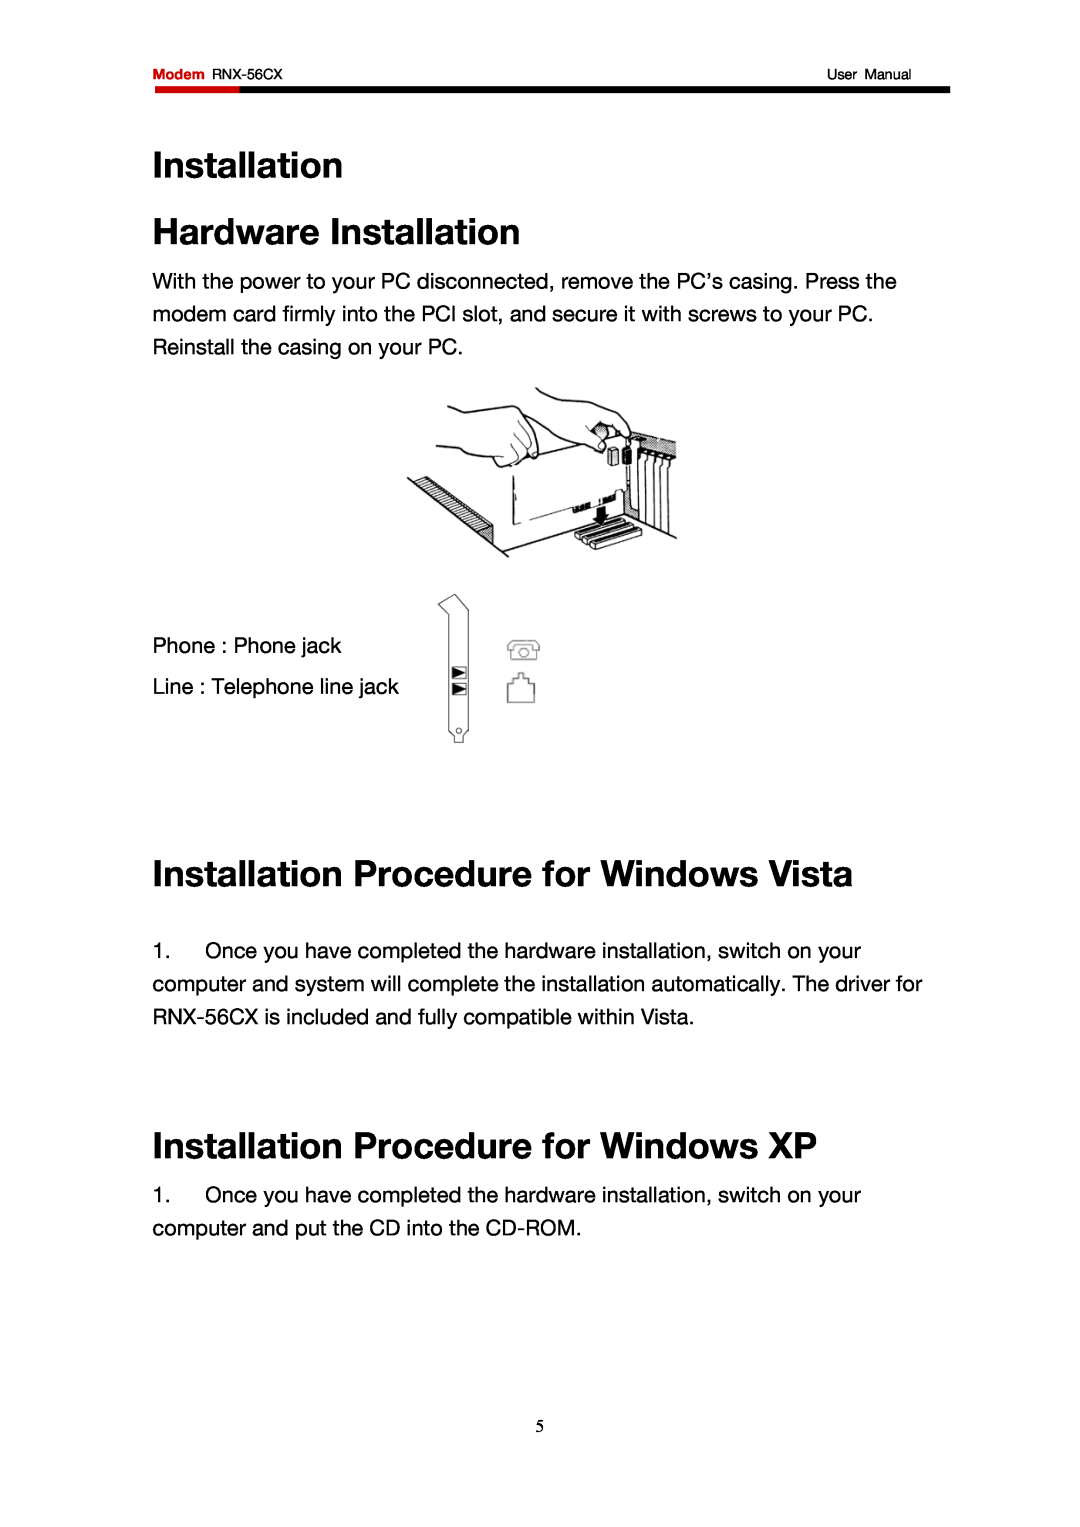 Rosewill RNX-56CX user manual Installation Hardware Installation, Installation Procedure for Windows Vista 